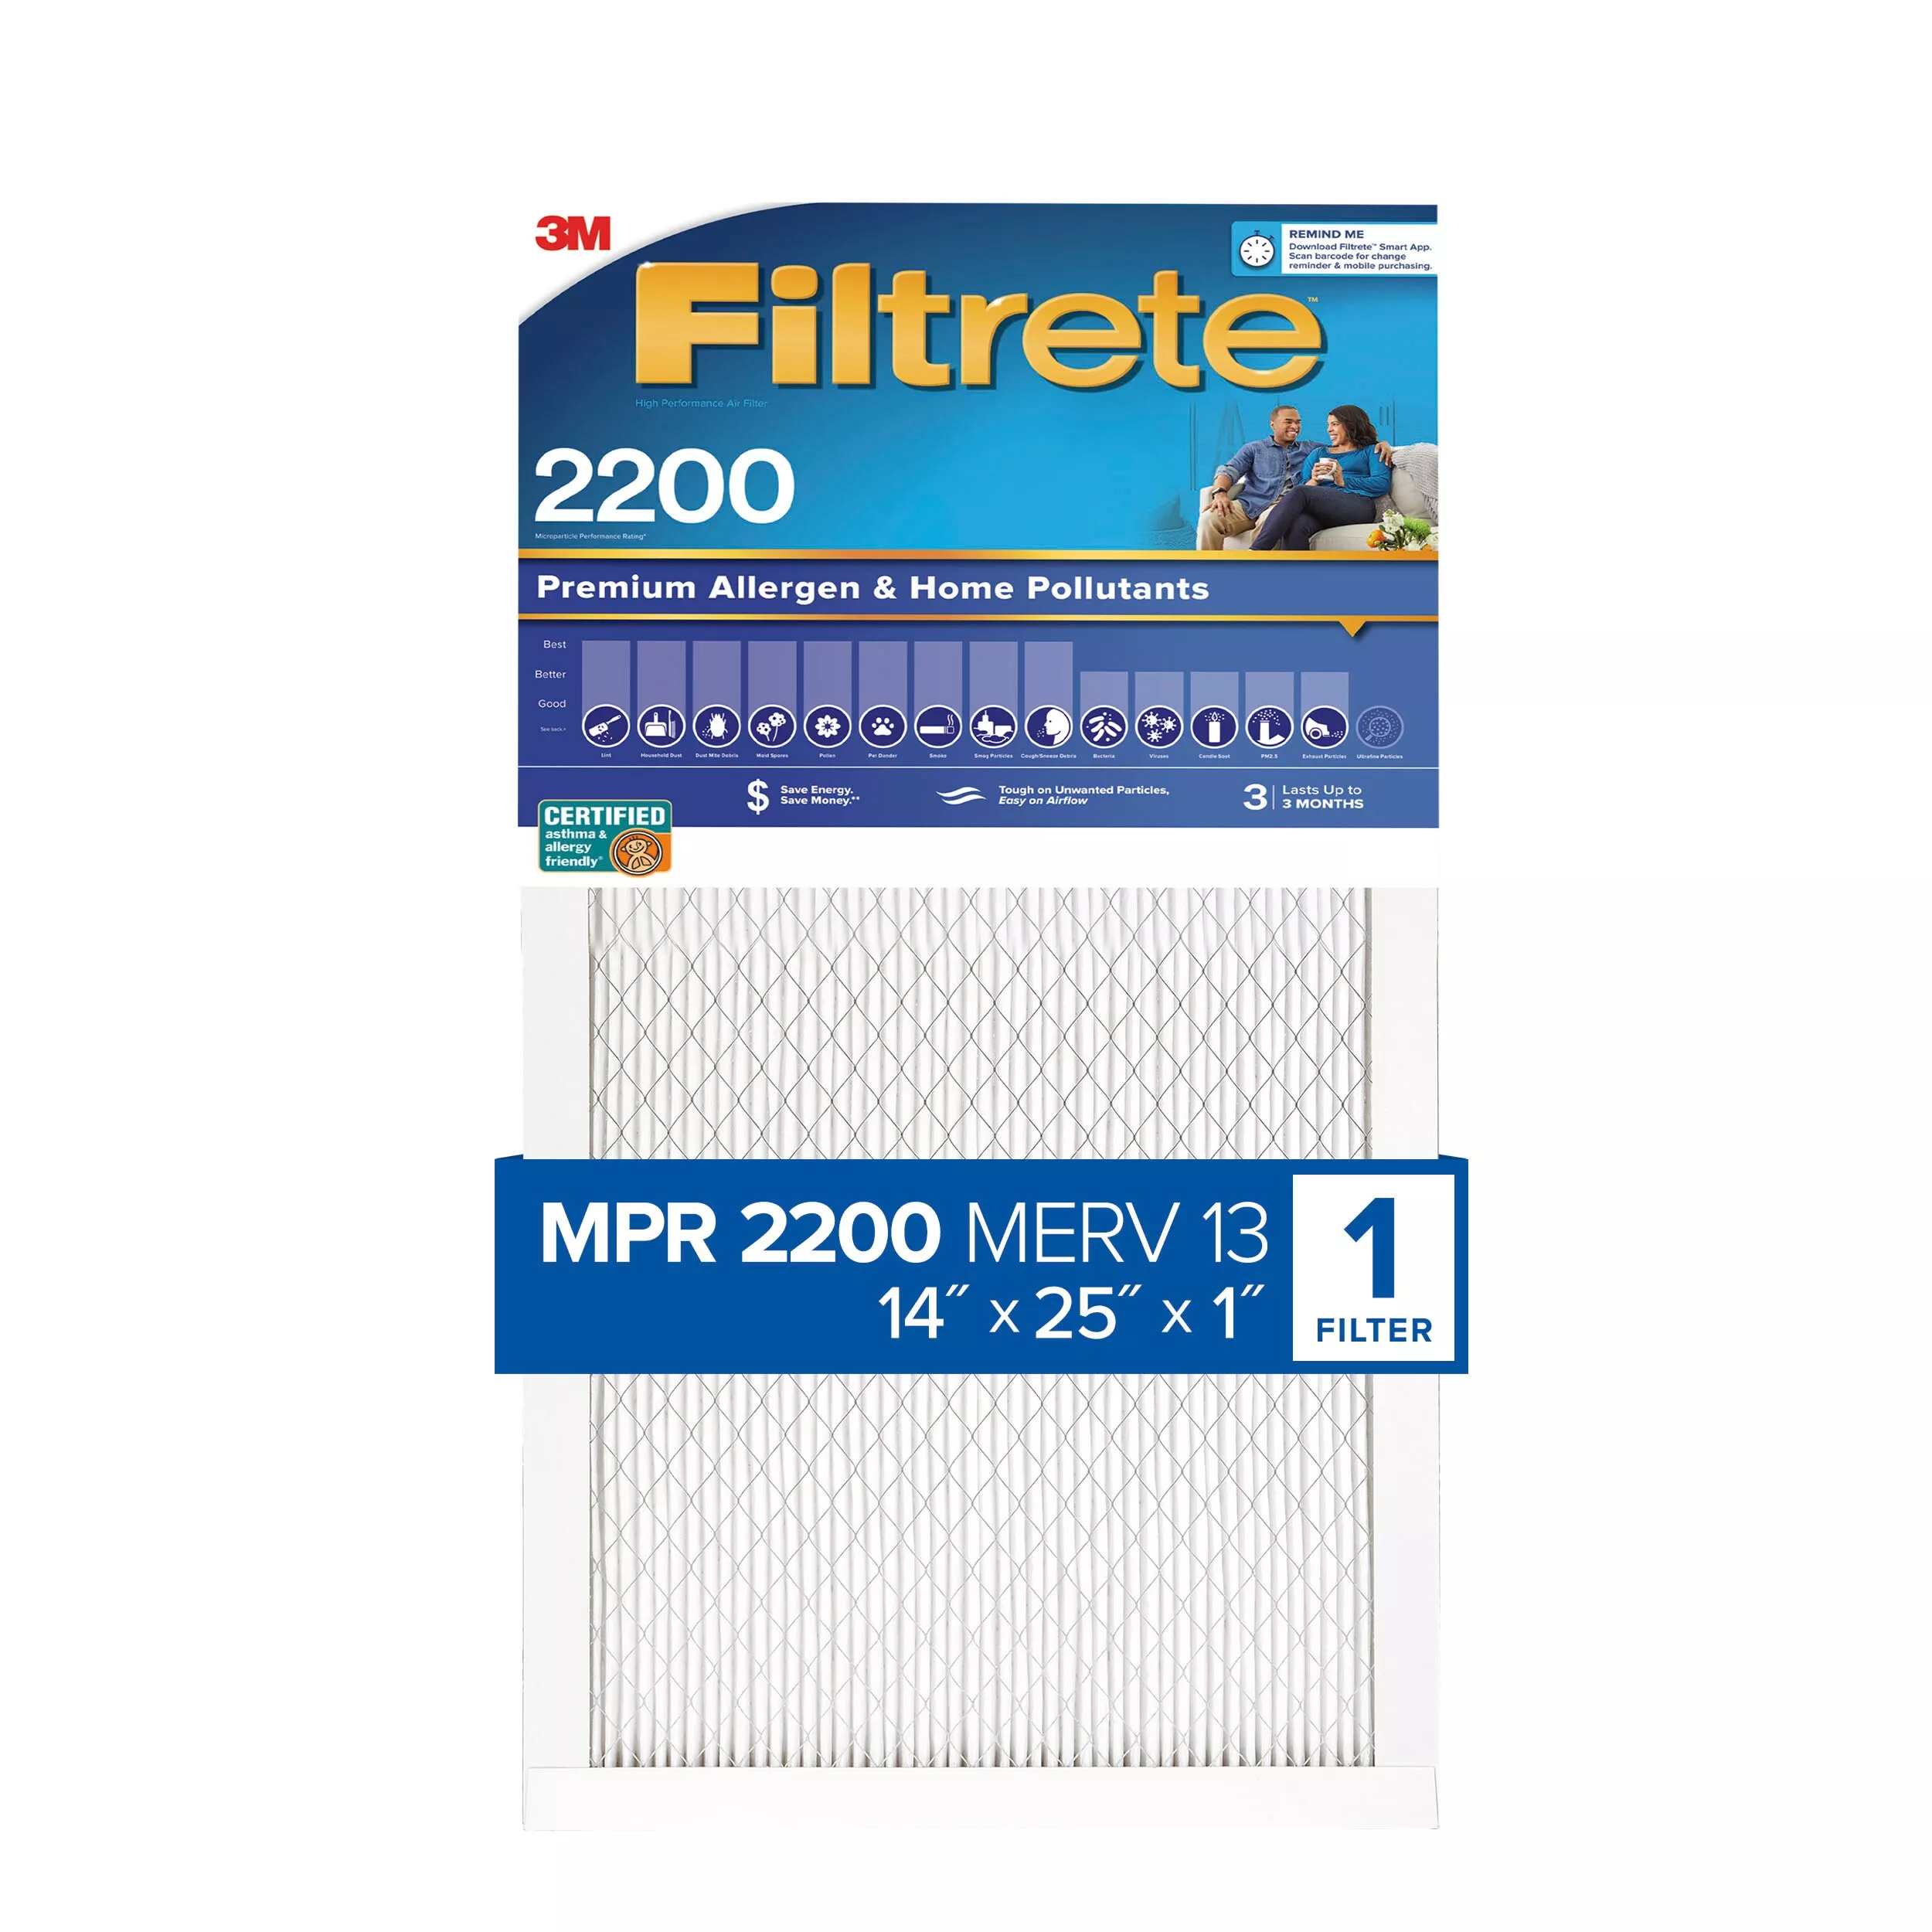 Filtrete™ High Performance Air Filter 2200 MPR EA04-4, 14 in x 25 in x 1 in (35.5 cm x 63.5 cm x 2.5 cm)